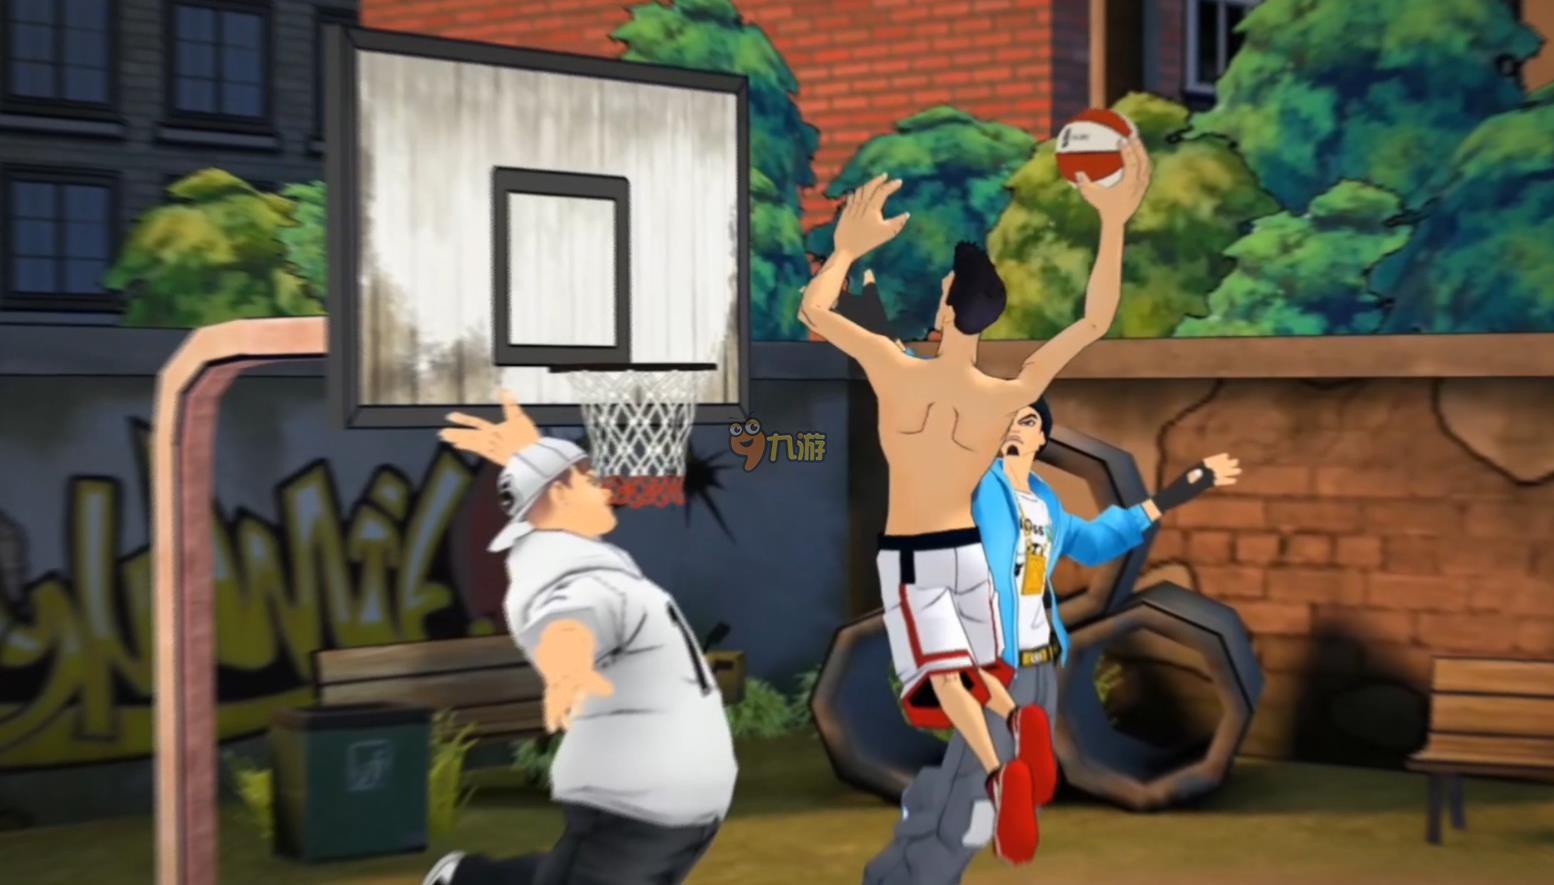 花式篮球街头赛 《街篮》10月底正式推出